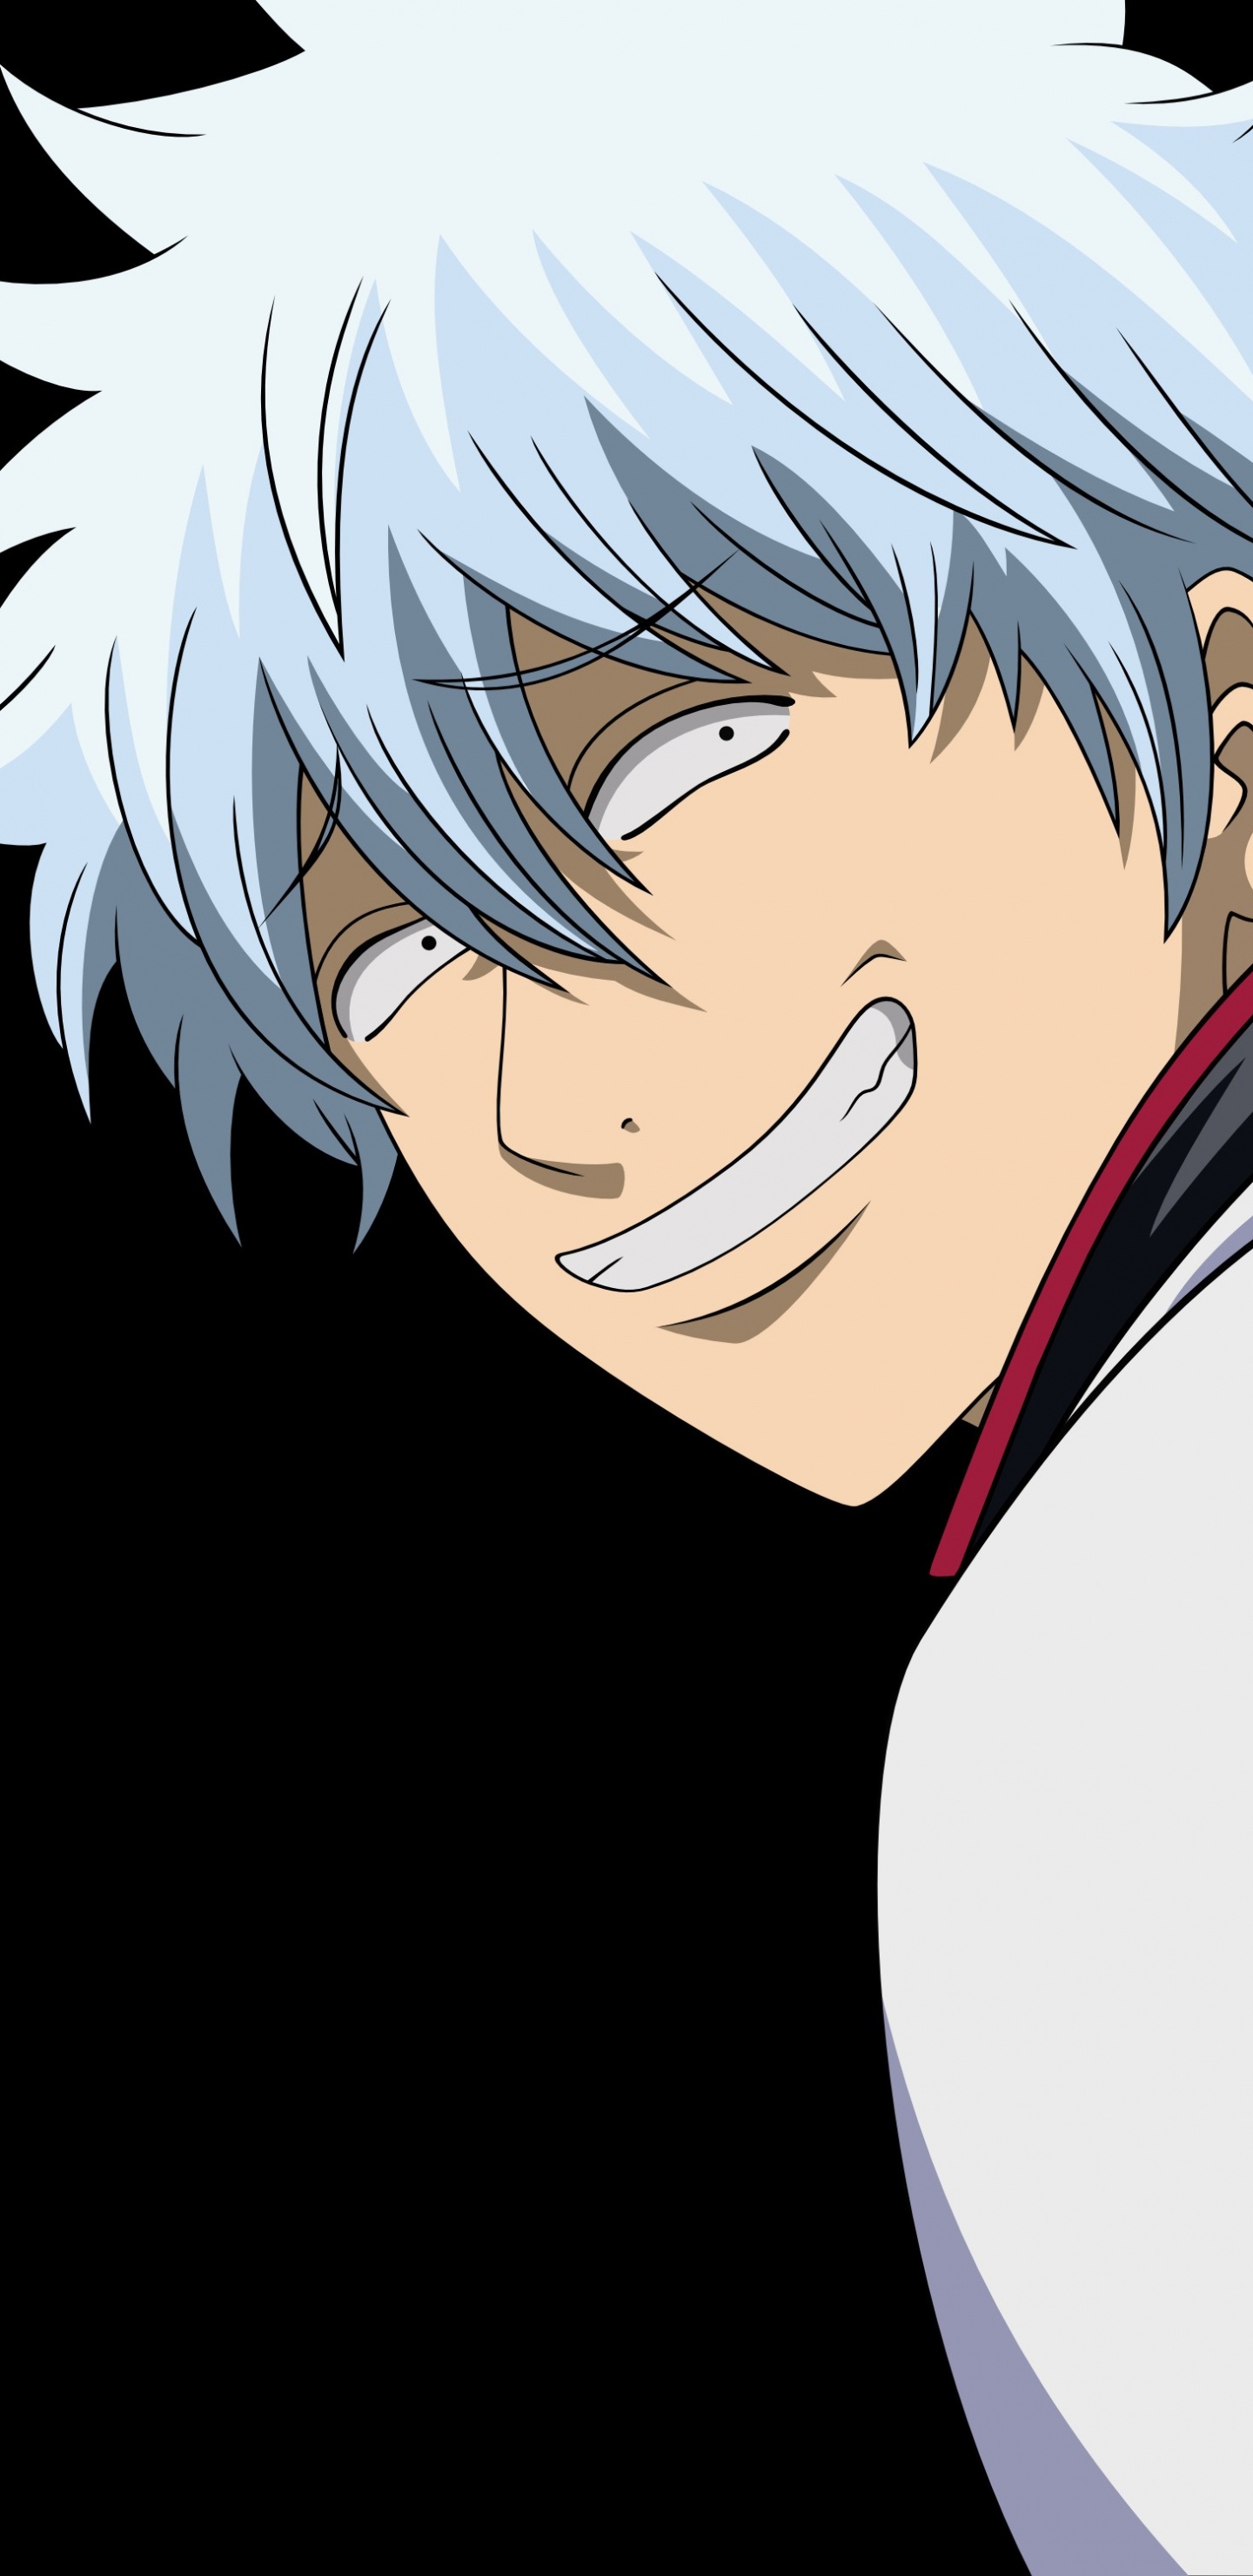 Personaje de Anime Masculino de Pelo Blanco. Wallpaper in 1440x2960 Resolution